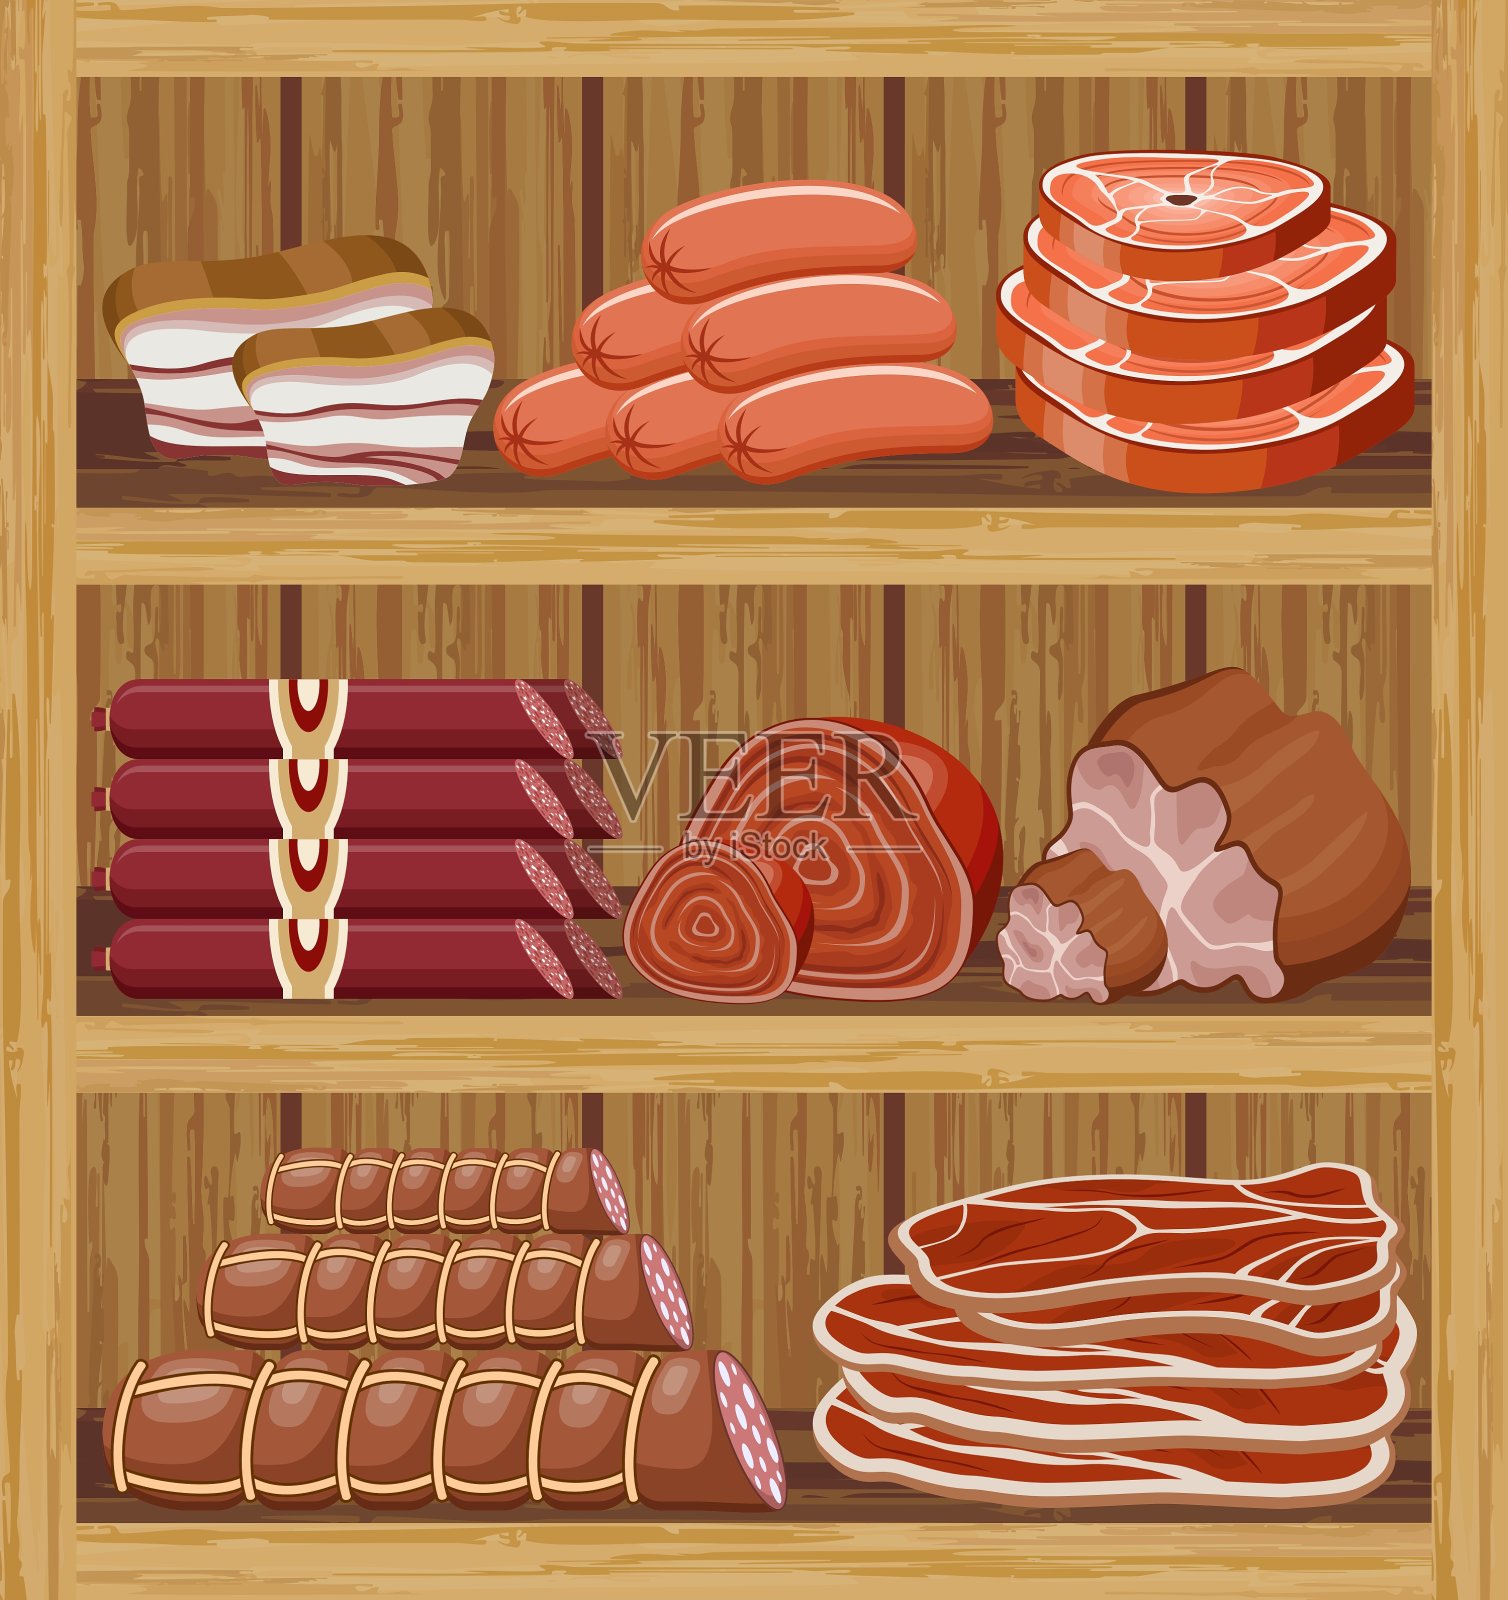 肉制品的货架插画图片素材